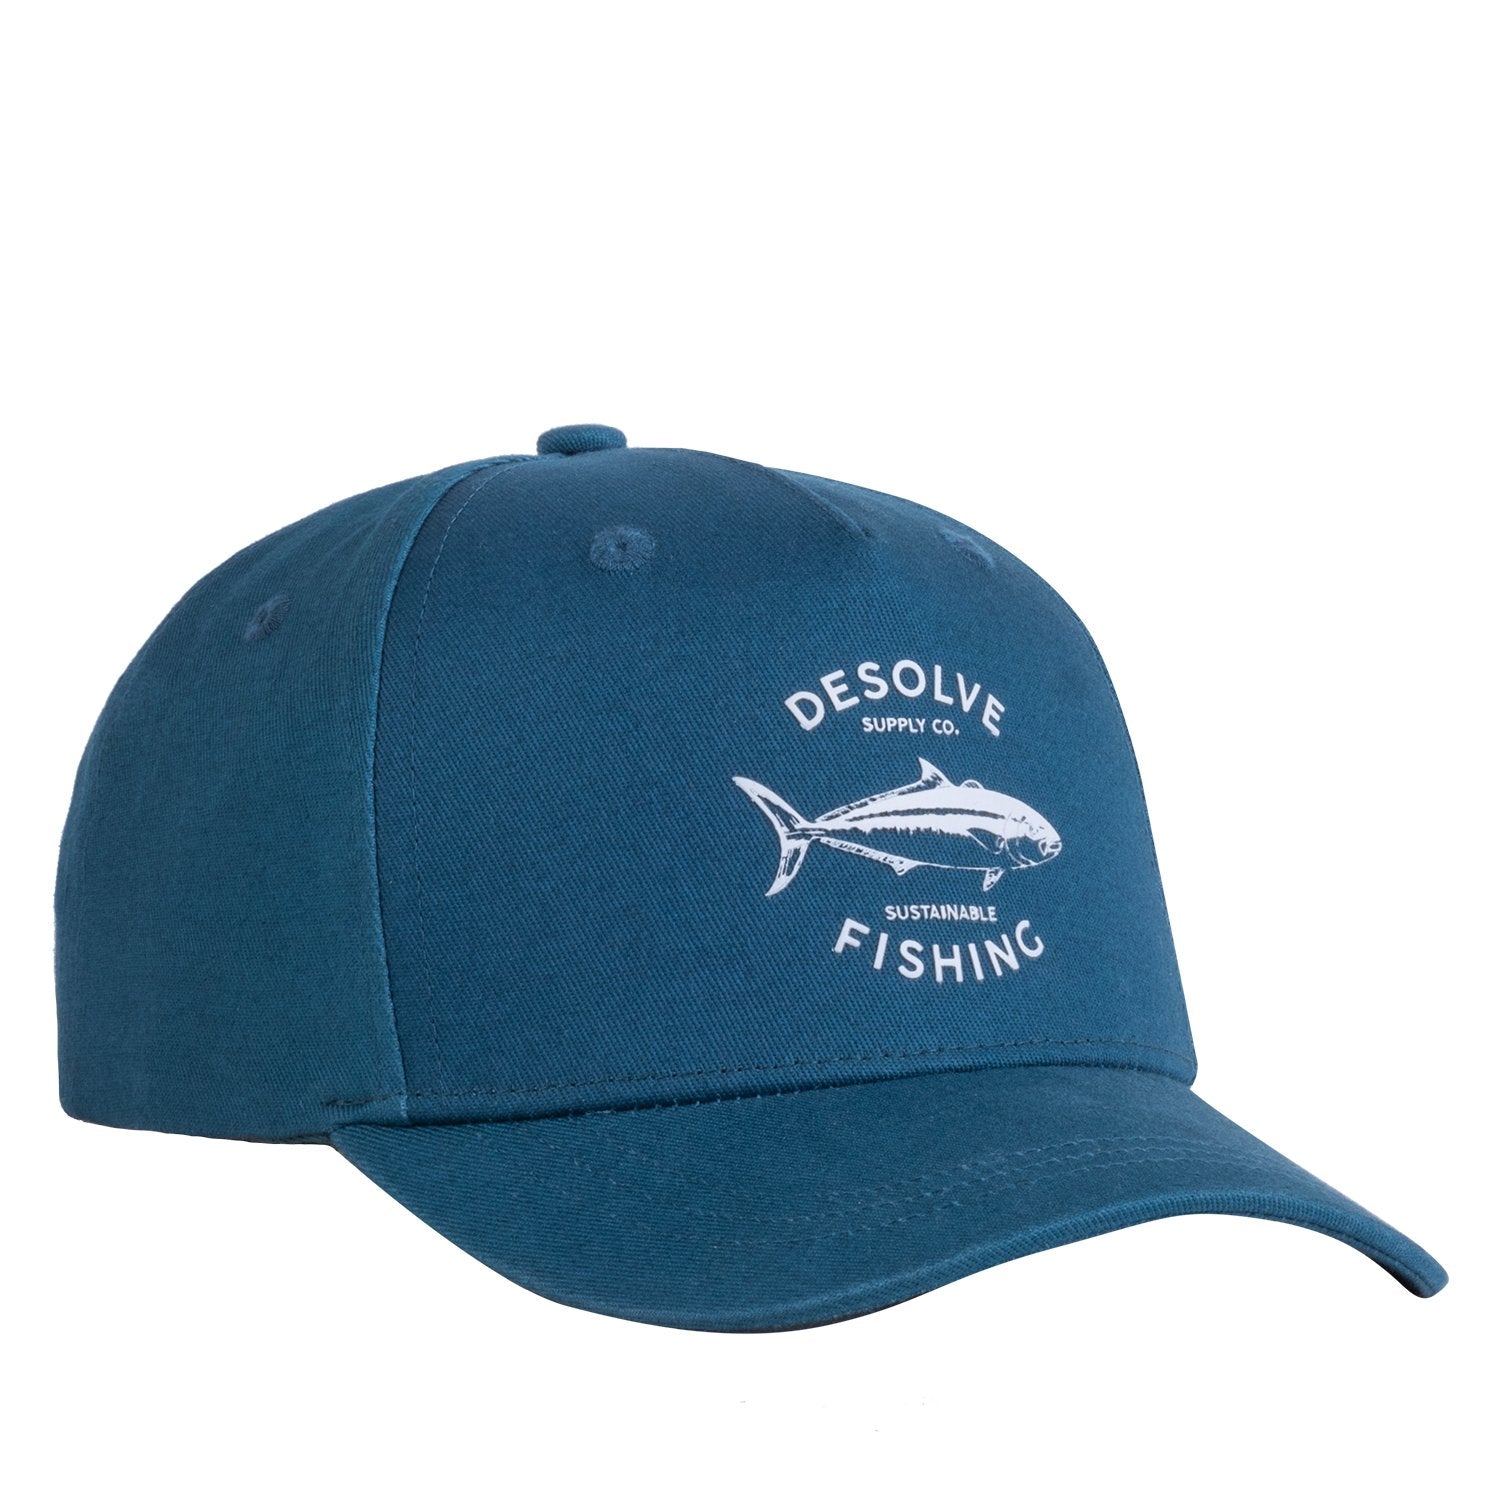 Kids Headwear, Desolve, Fishing Hats - Desolve Supply Co.